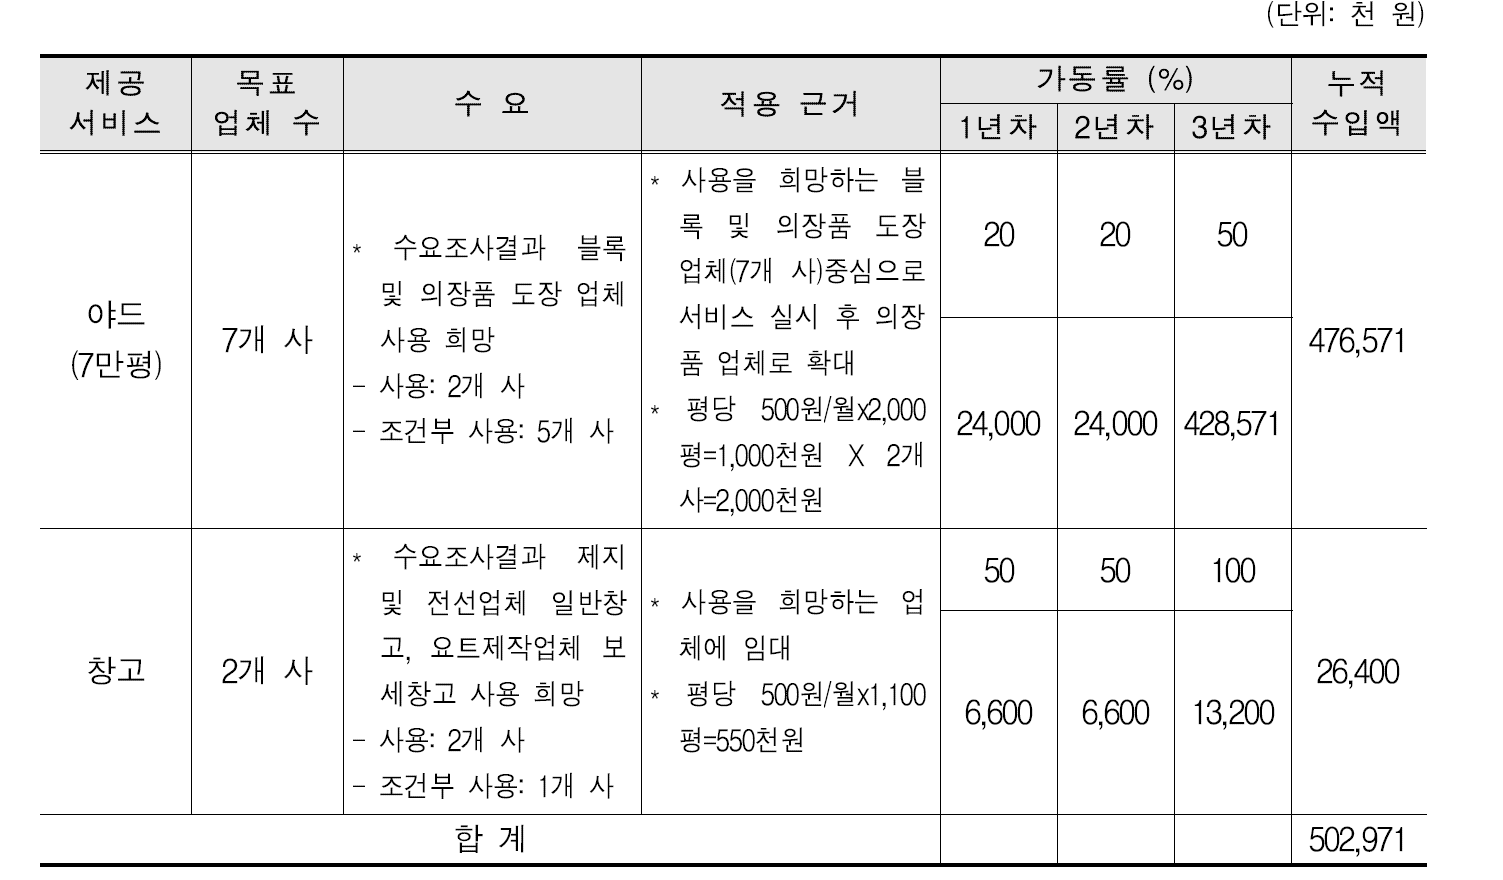 대불산단 공동물류 목표 업체 수 및 수익산정 적용근거